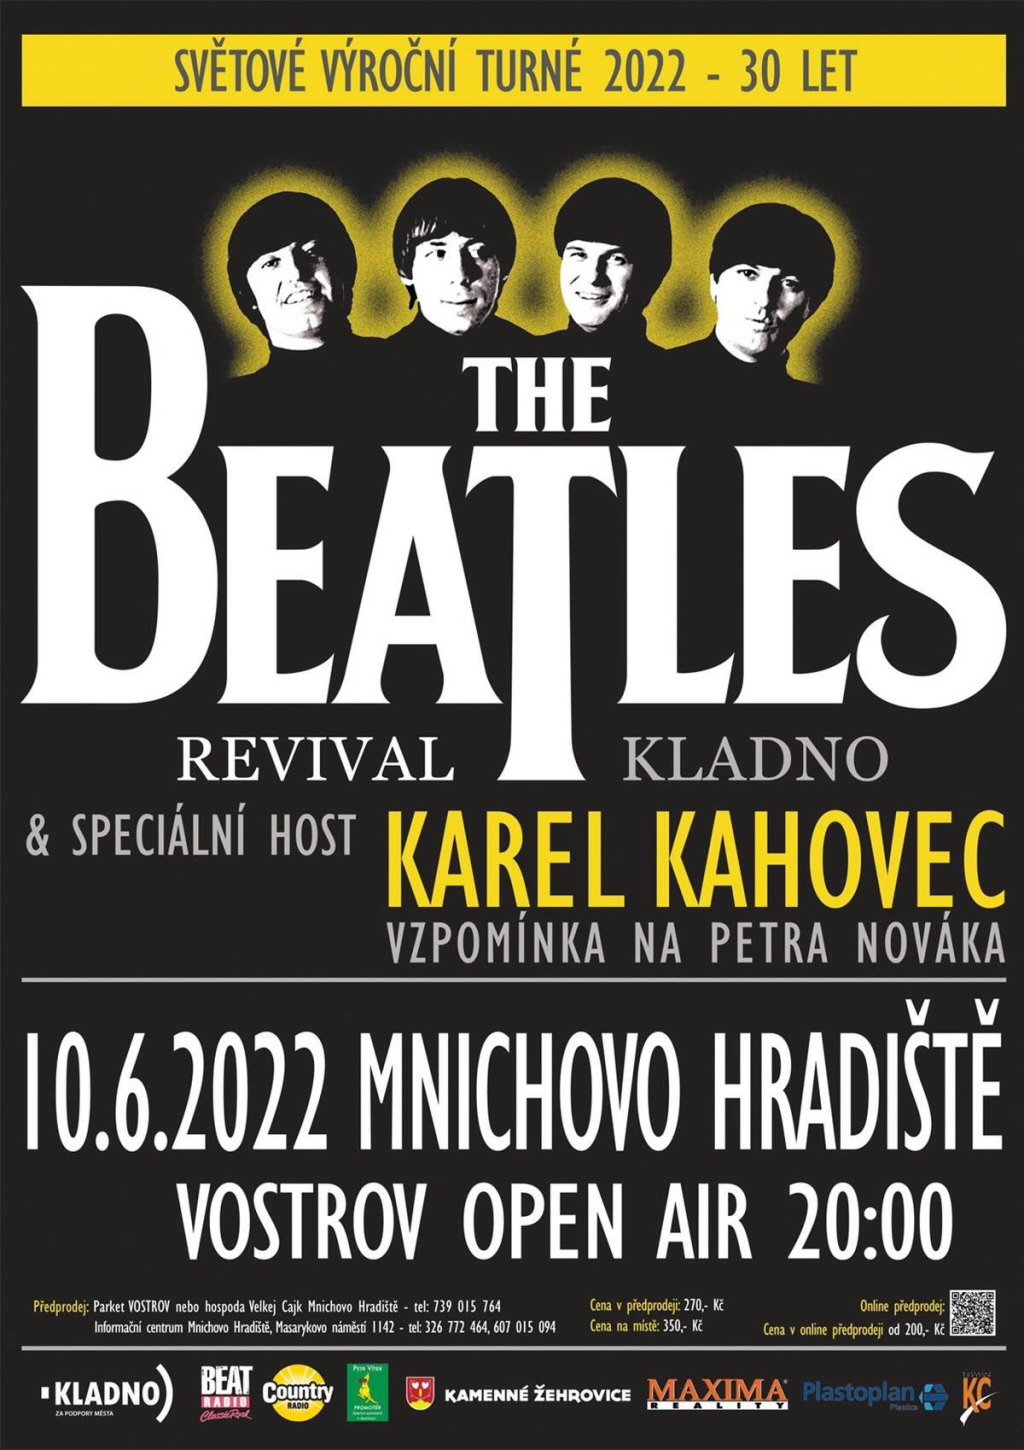 Legendární Karel Kahovec spolu s The Beatles Revival zavítá na Vostrov